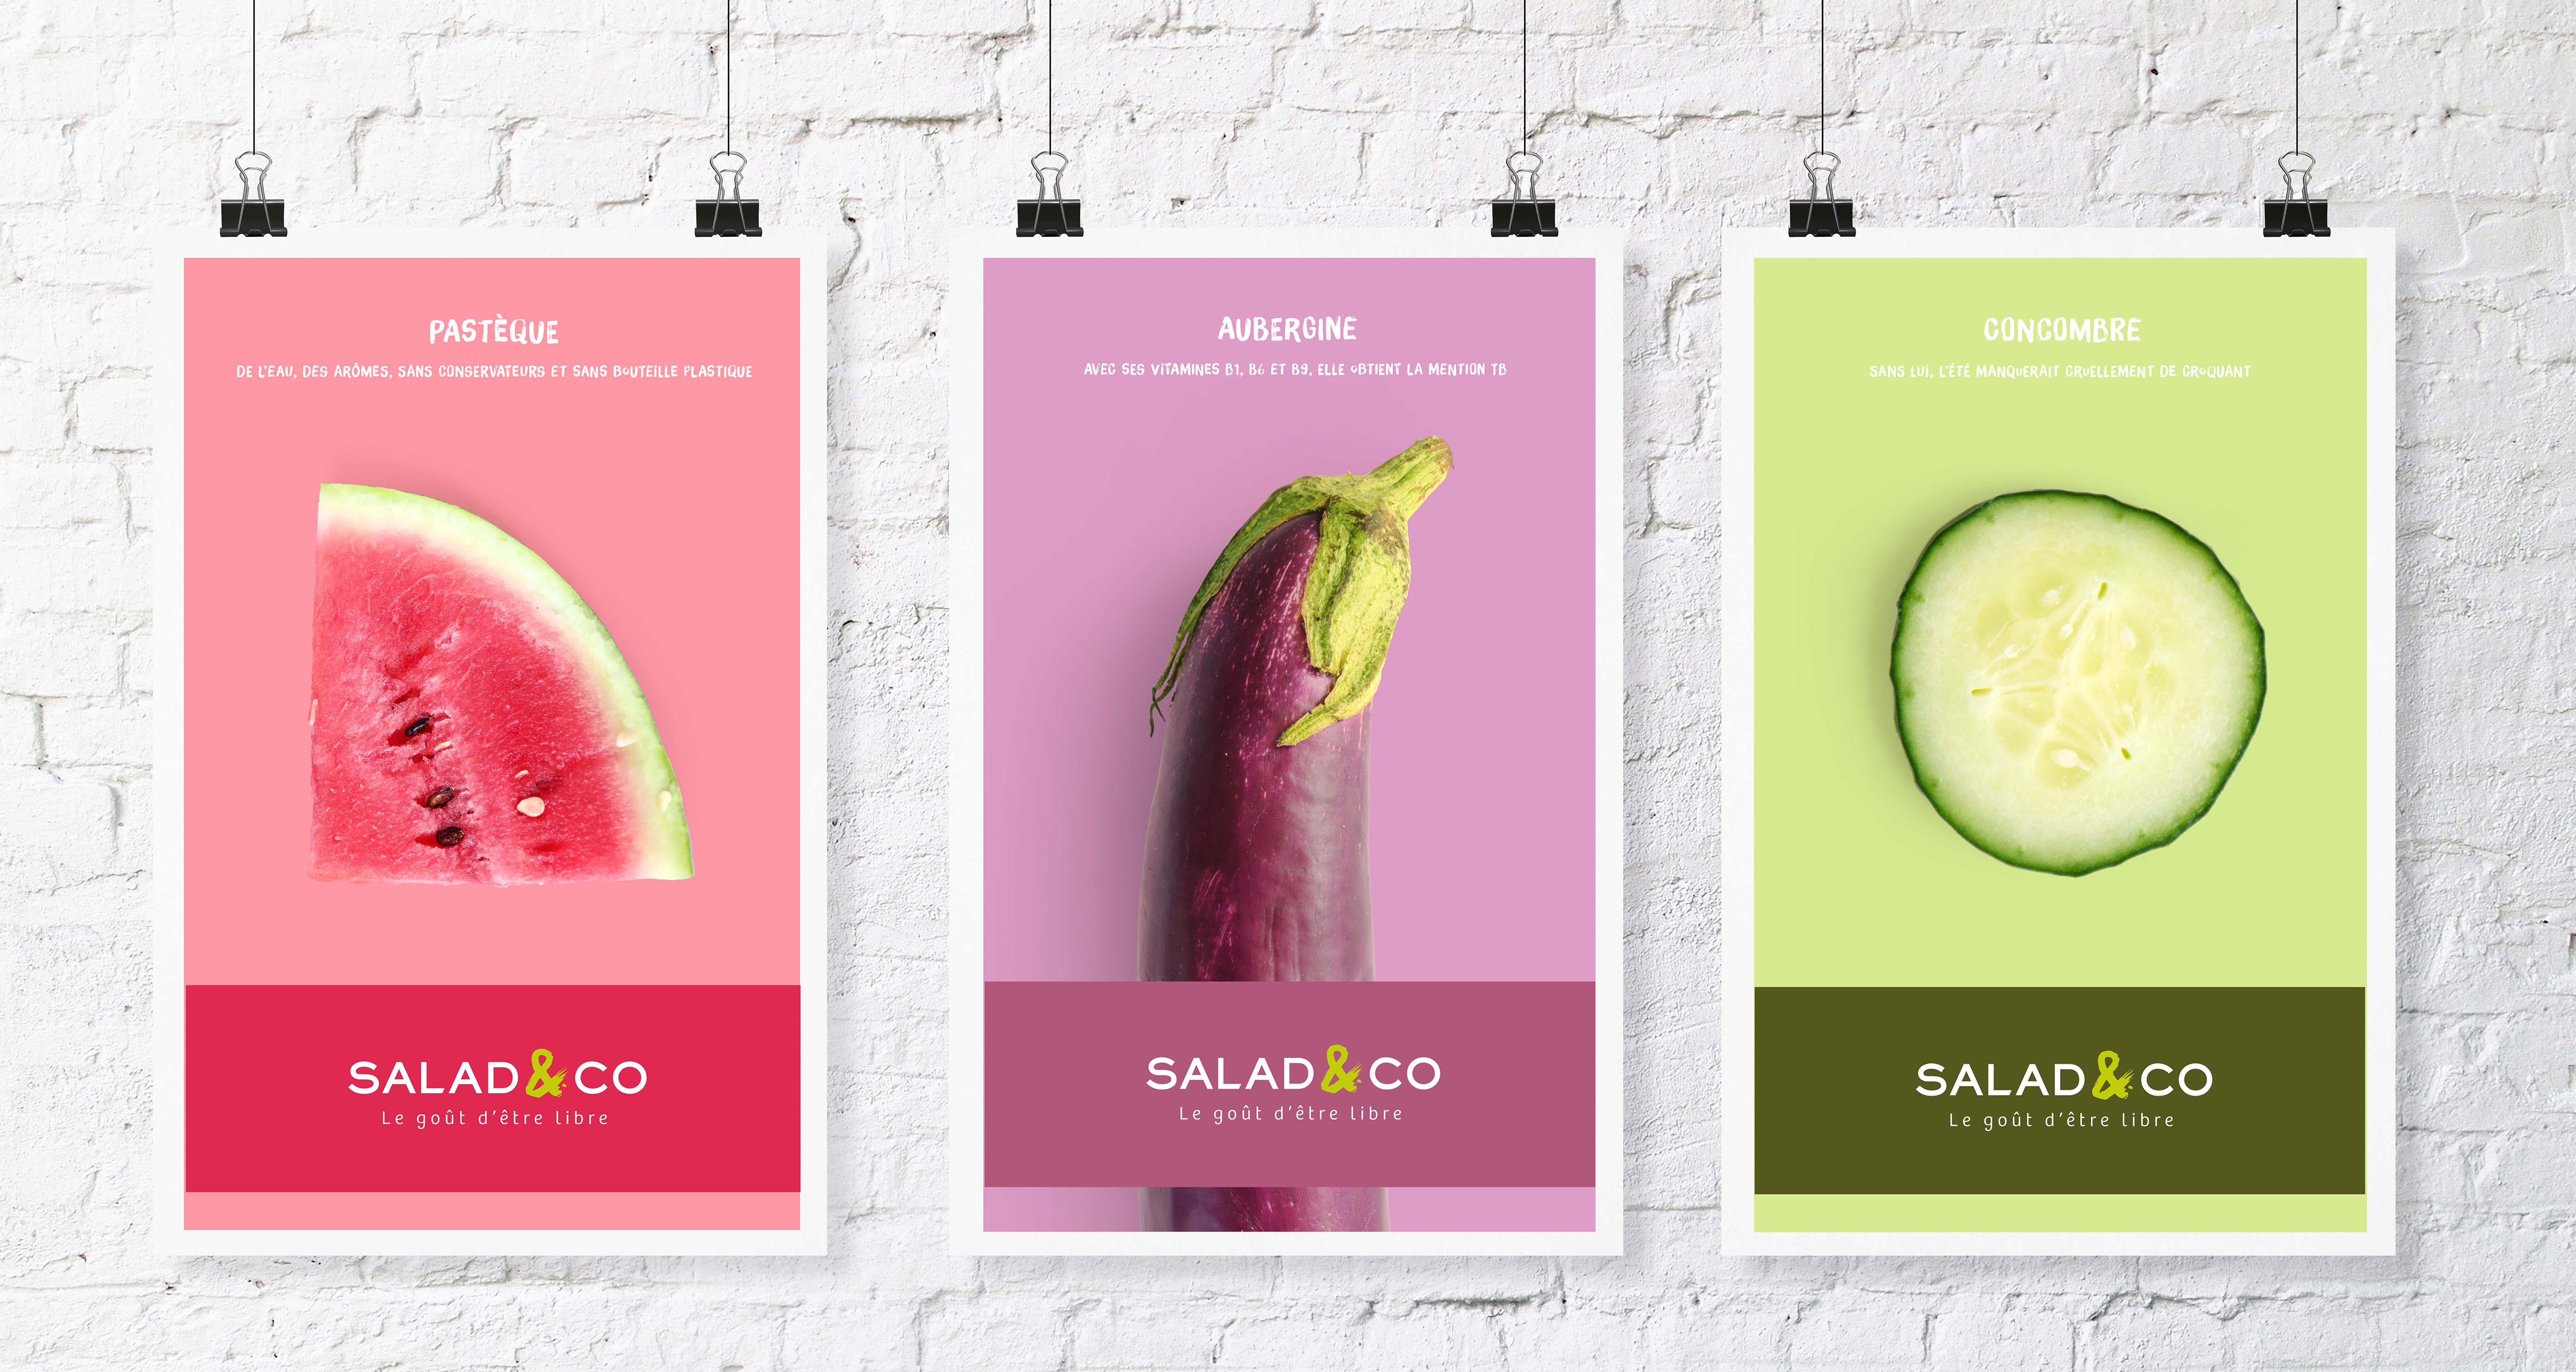 Salad & co affiches produits